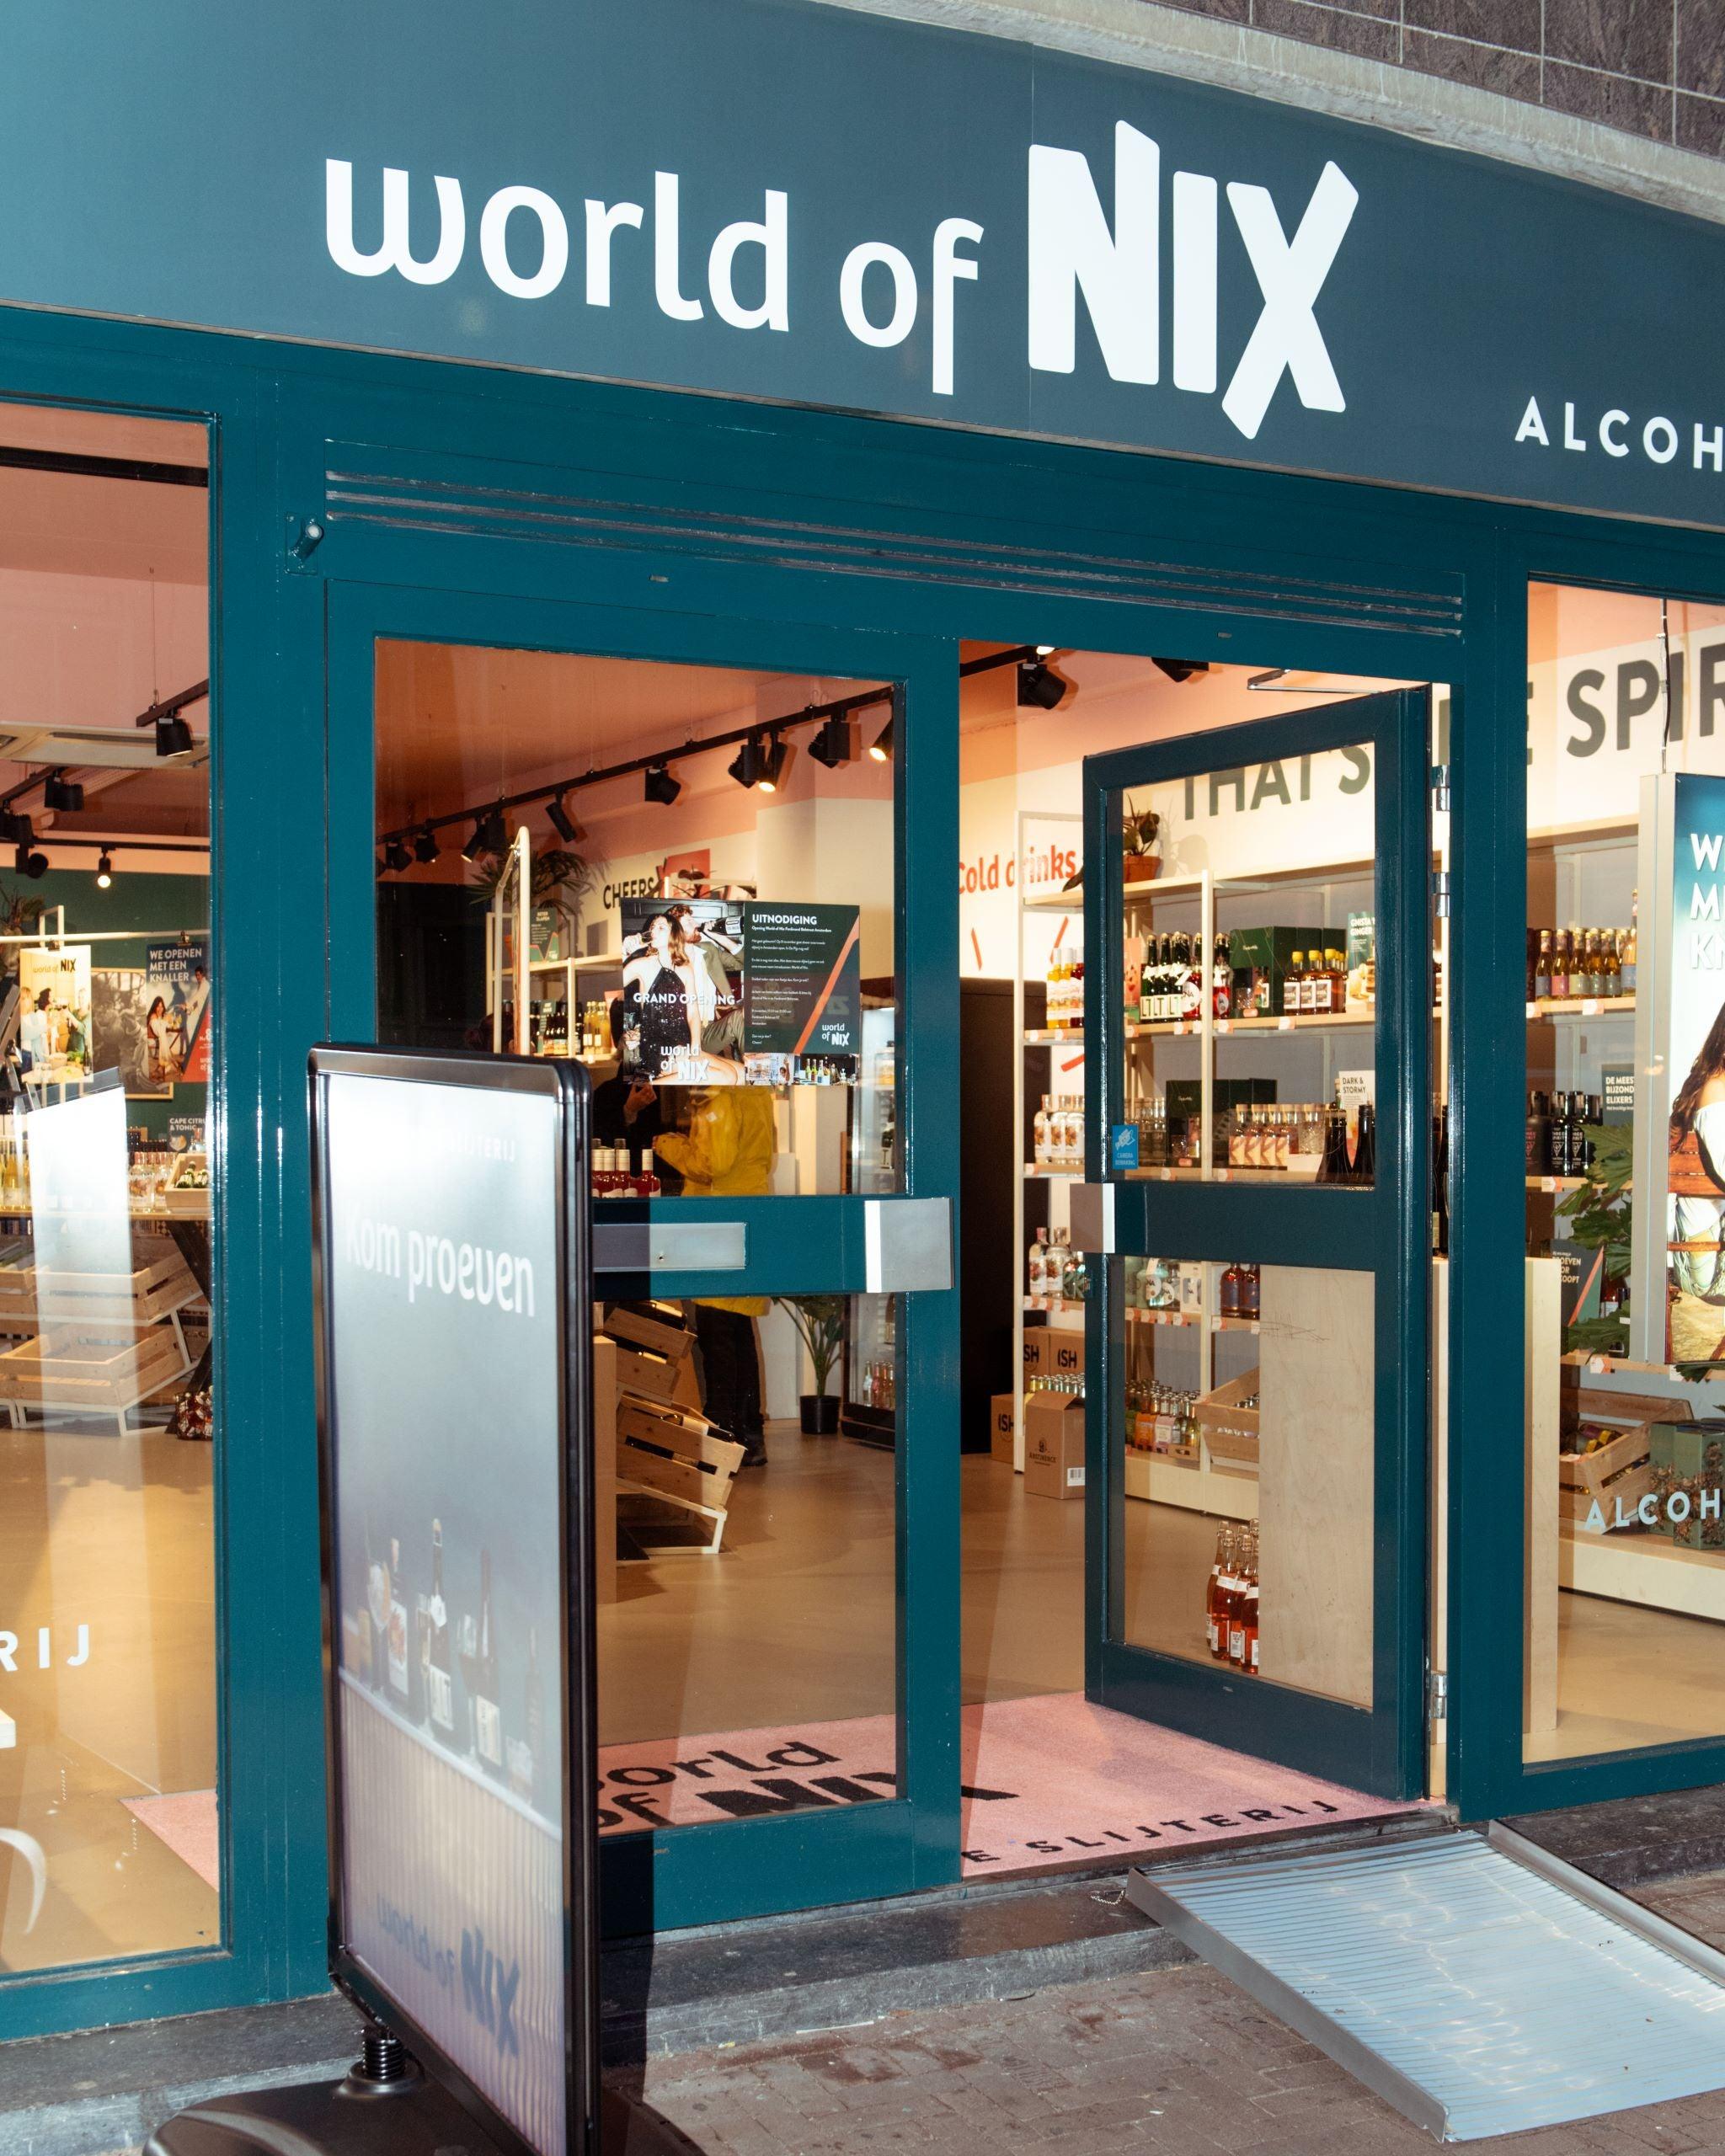 Deze winkels in Amsterdam helpen je Dry January door - World of NIX